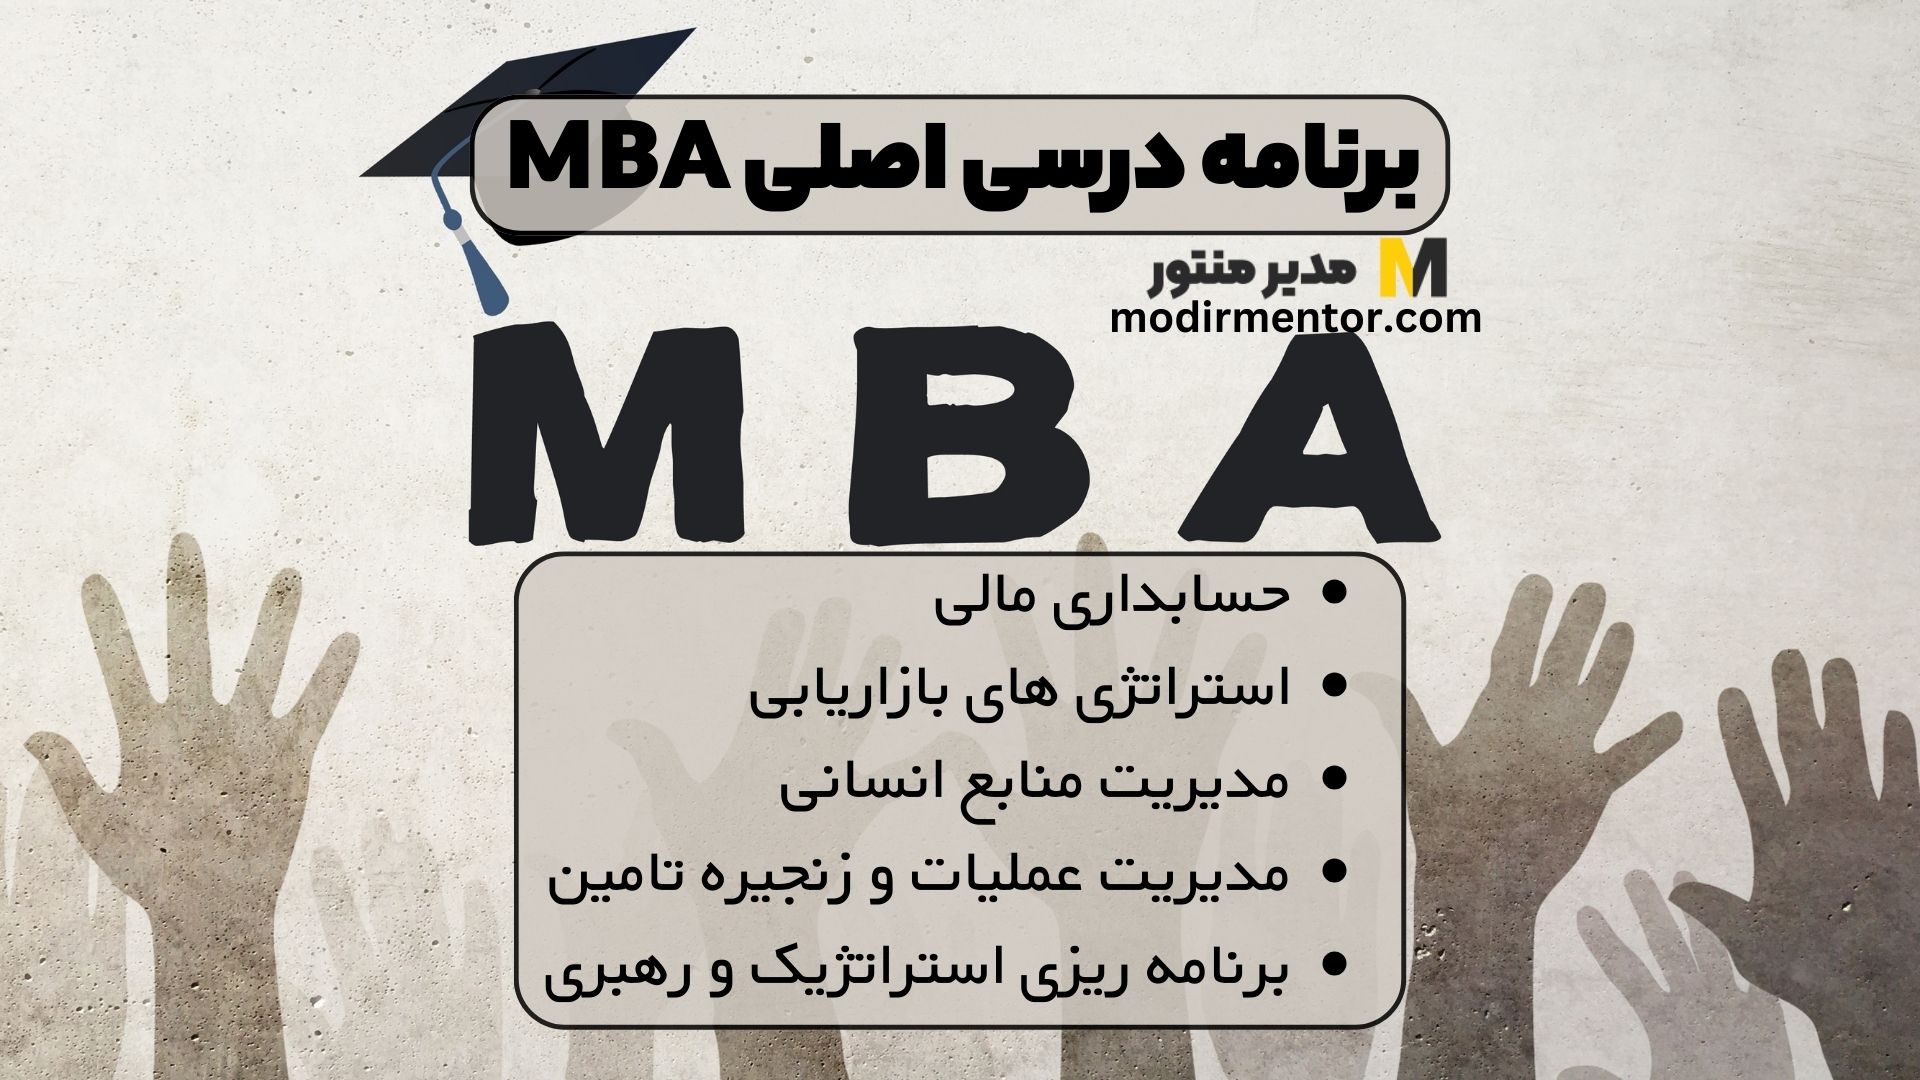 برنامه درسی اصلی MBA